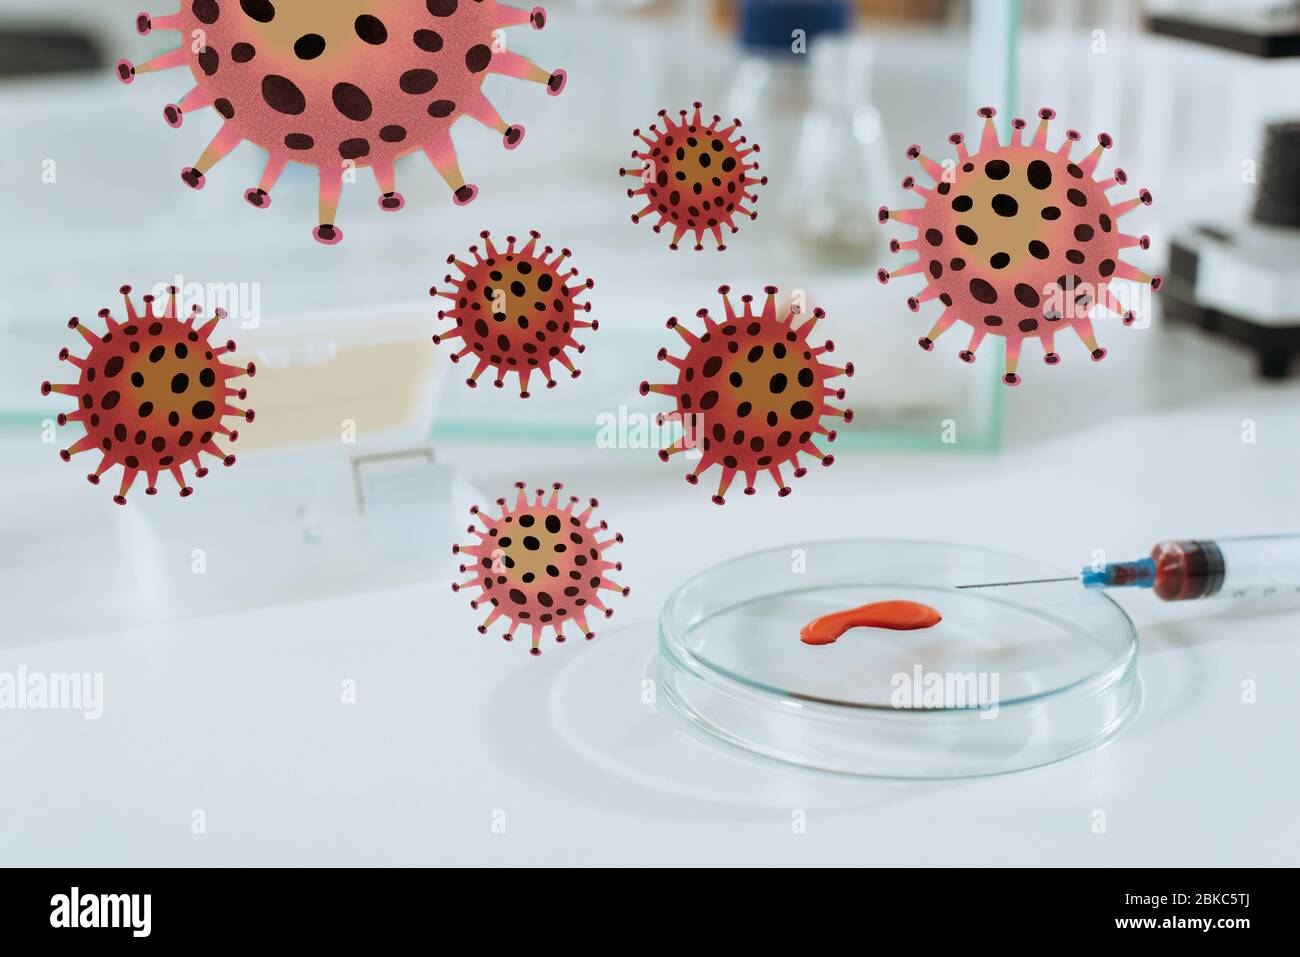 Selektiver Fokus der Spritze und Petrischale mit Blutprobe in der Nähe der weißen Maus in Glasbox, Bakterien-Illustration Stockfoto